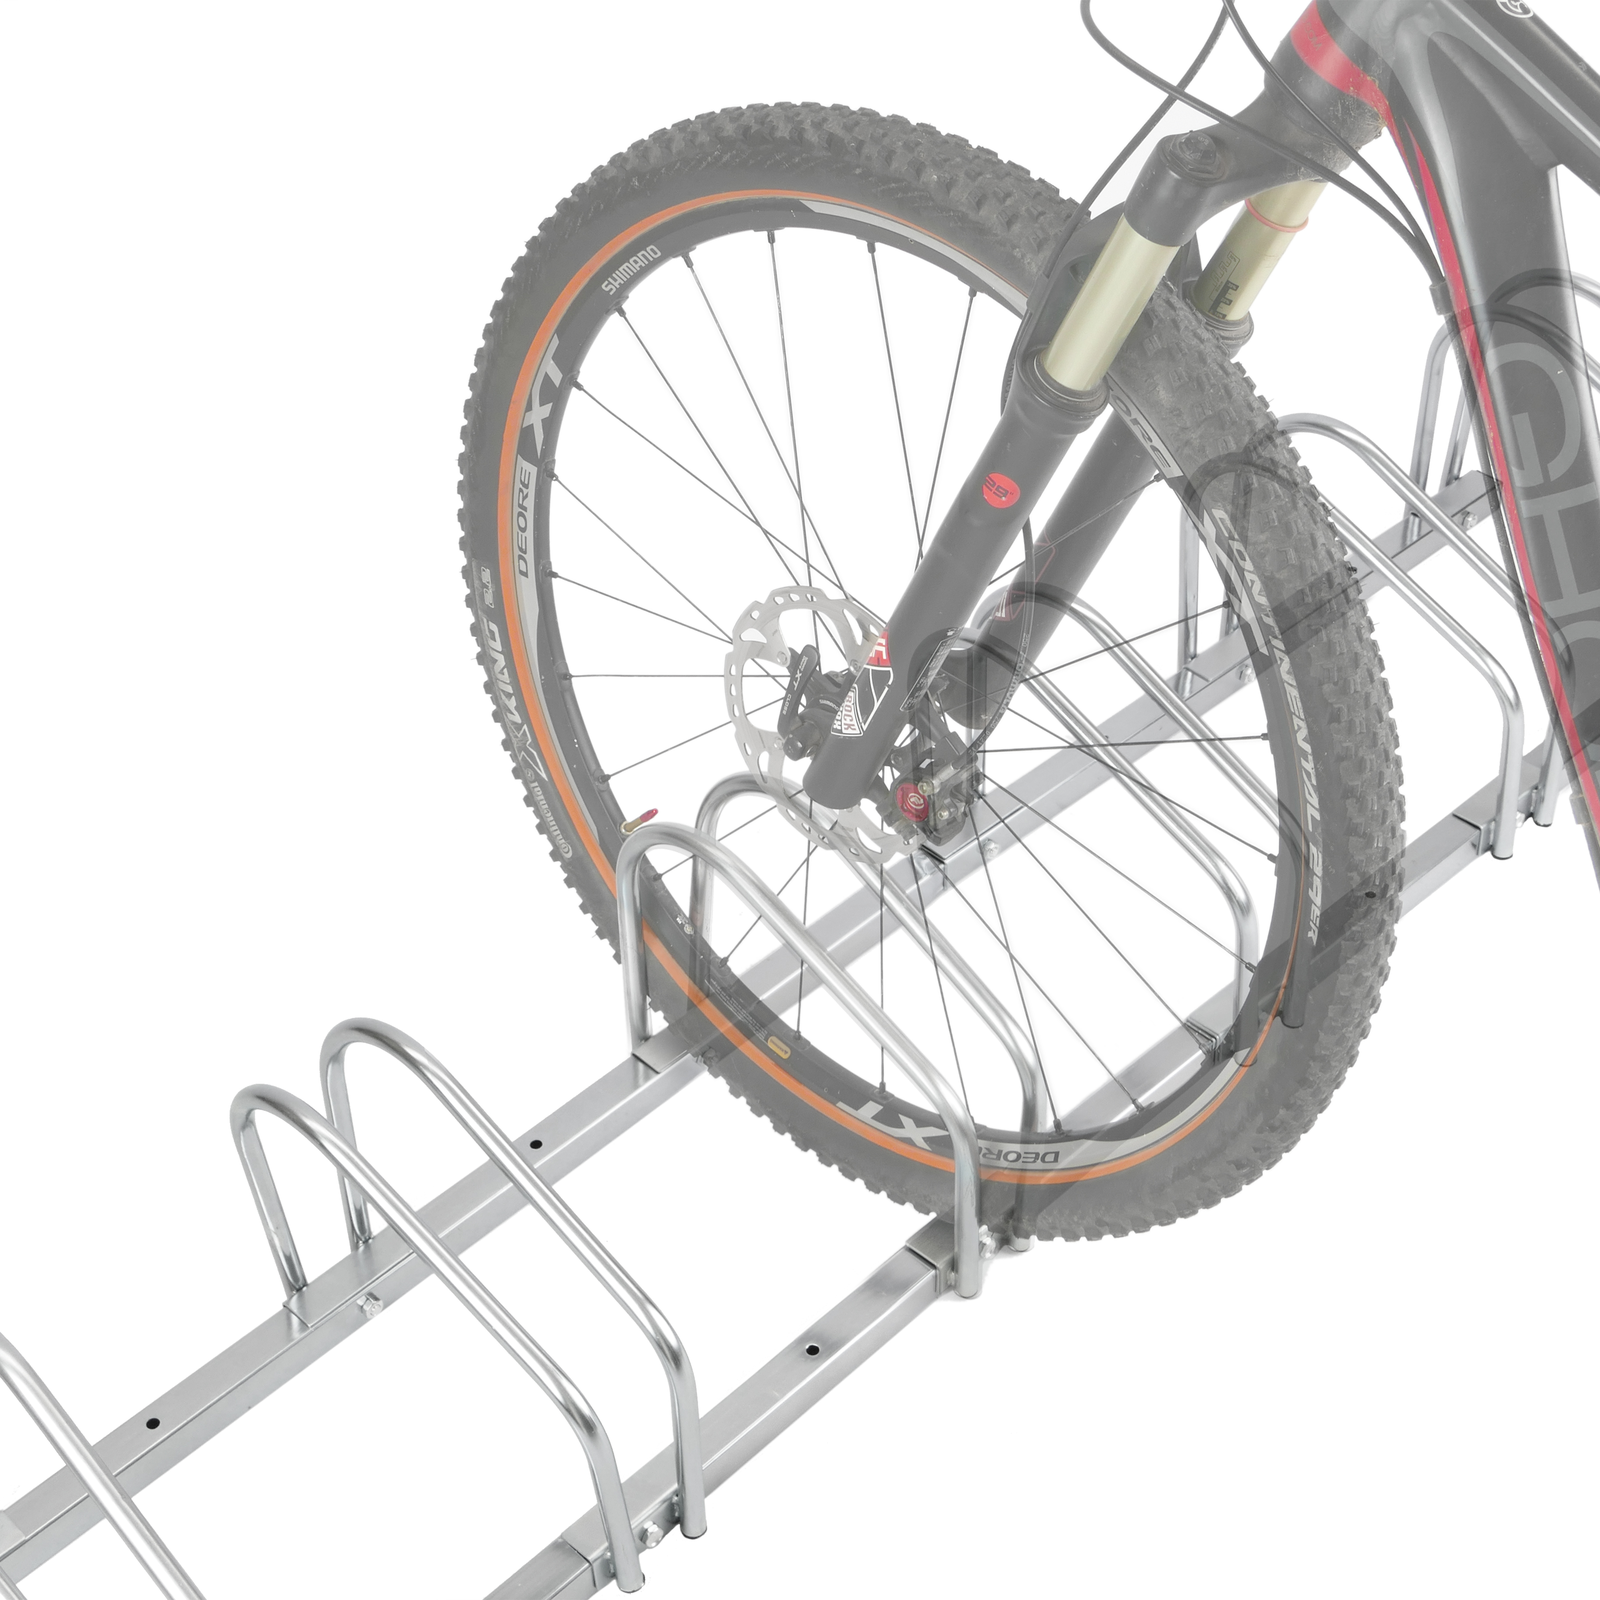 Soporte de Hierro galvanizado para 6 Bicicletas en Suelo o Pared 159 x 29cm Aparcamiento para bicicletas 